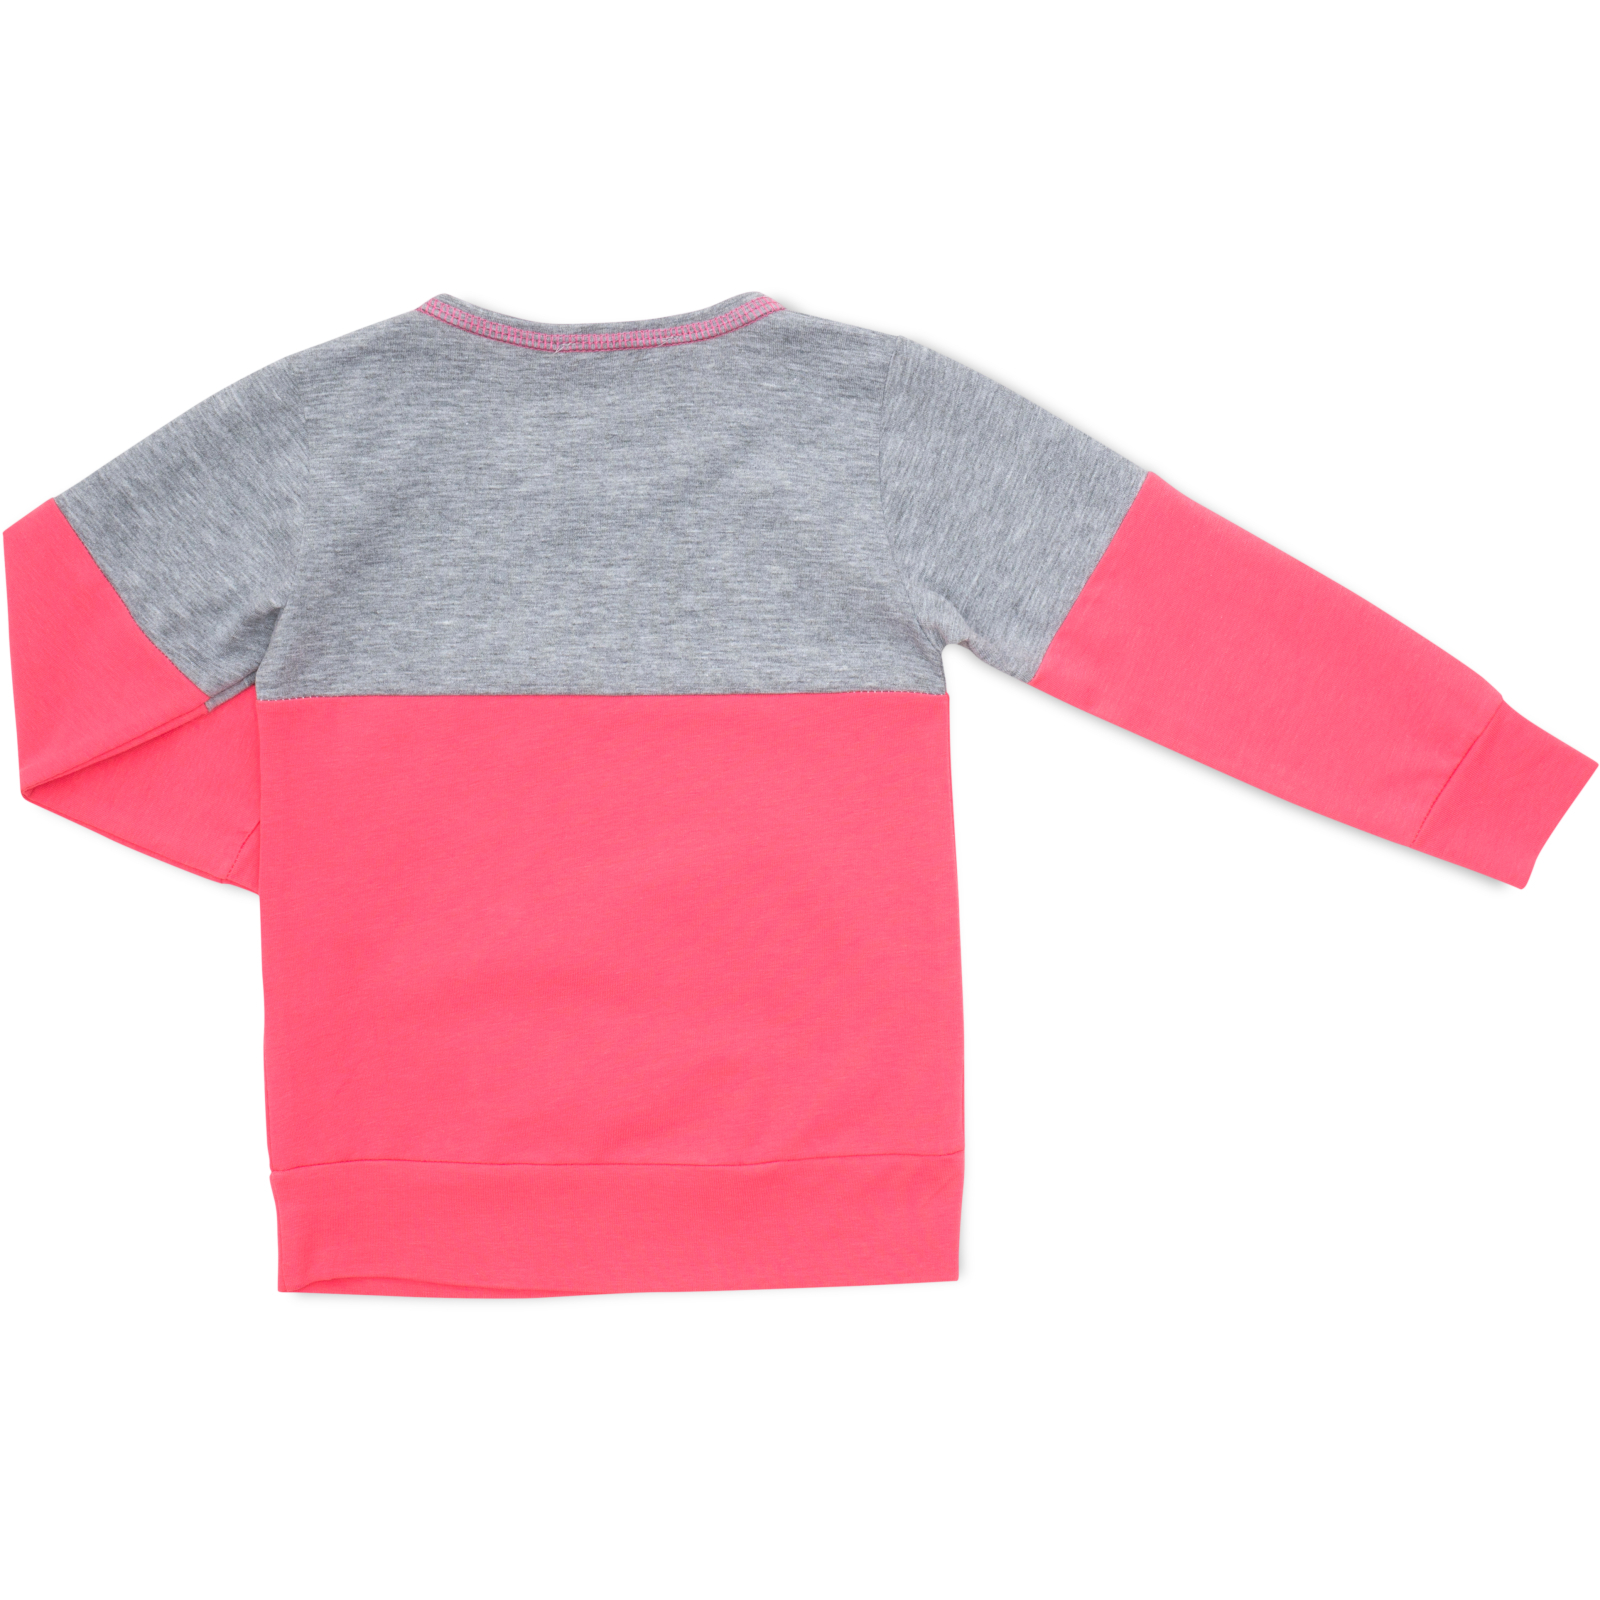 Пижама Matilda со звездочками (7167-134G-pink) изображение 5